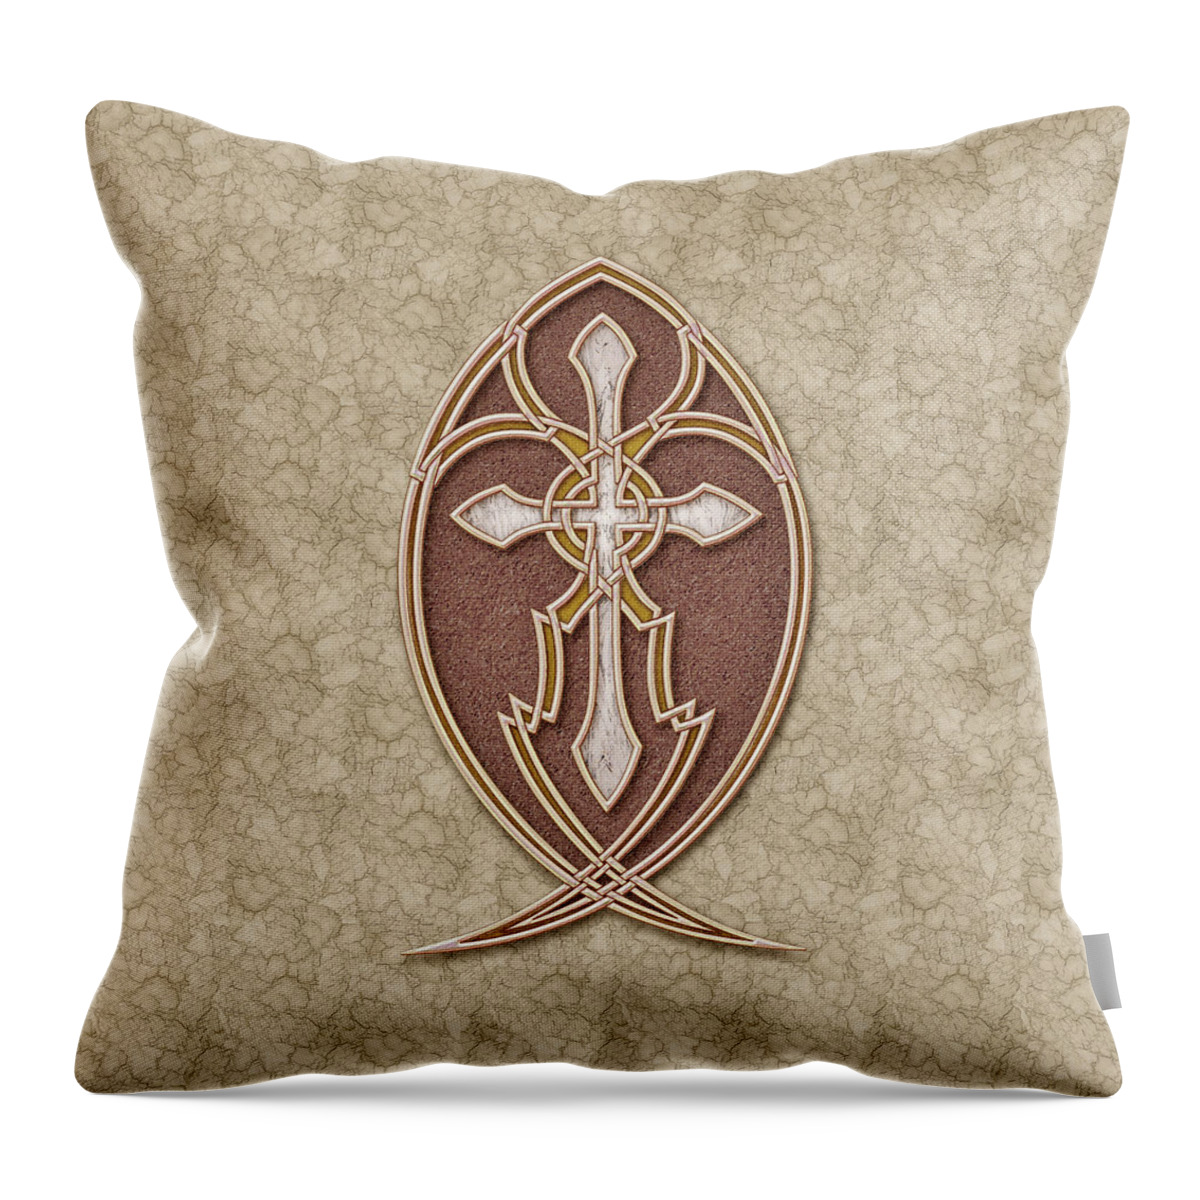 Christian Art Throw Pillow featuring the mixed media Christian Cross by Kurt Wenner